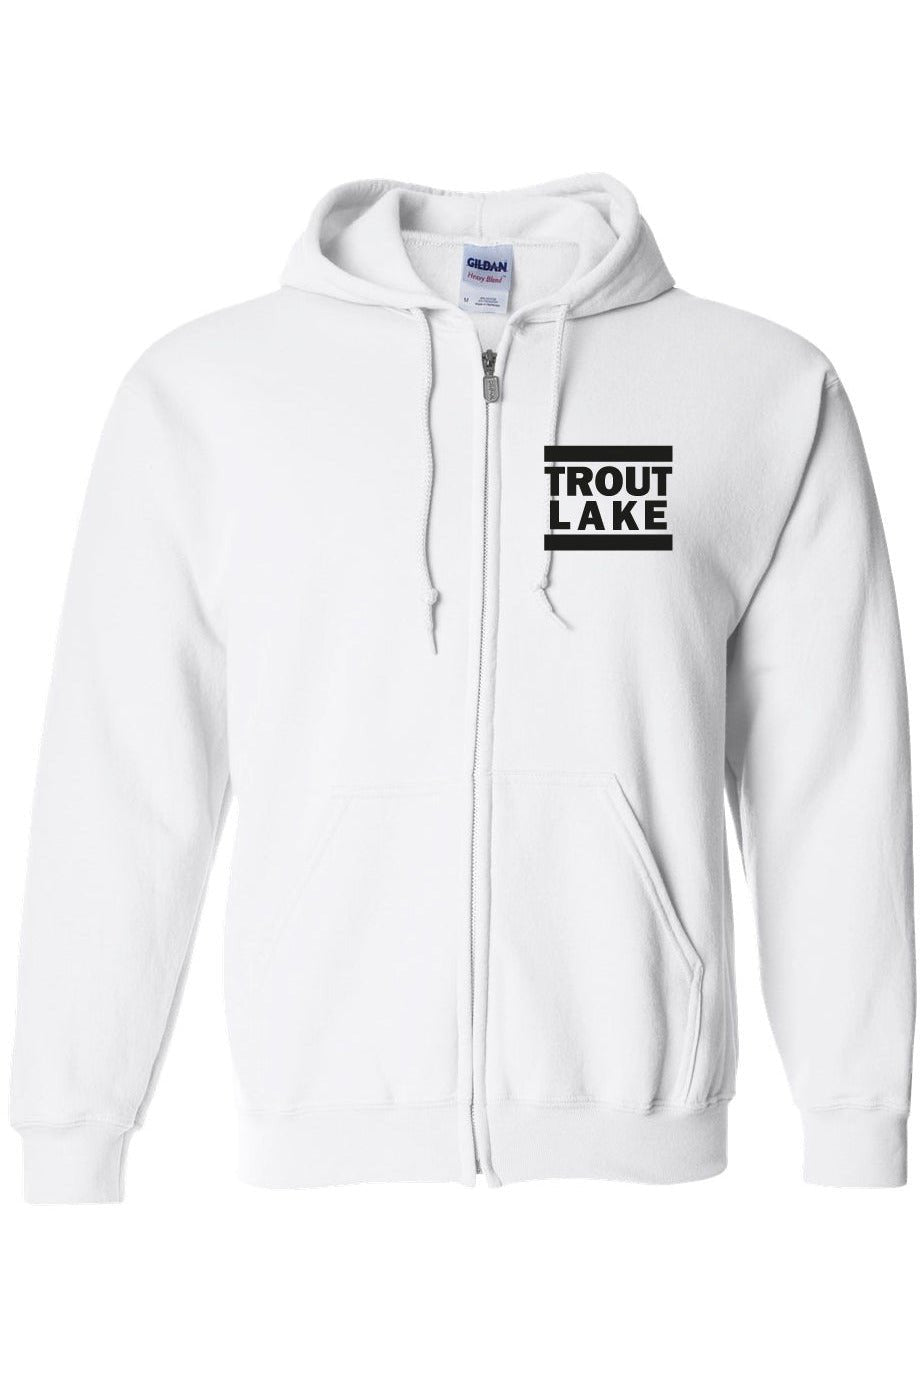 Trout Lake | Zip Hoodie (Adult) - Oddball Workshop